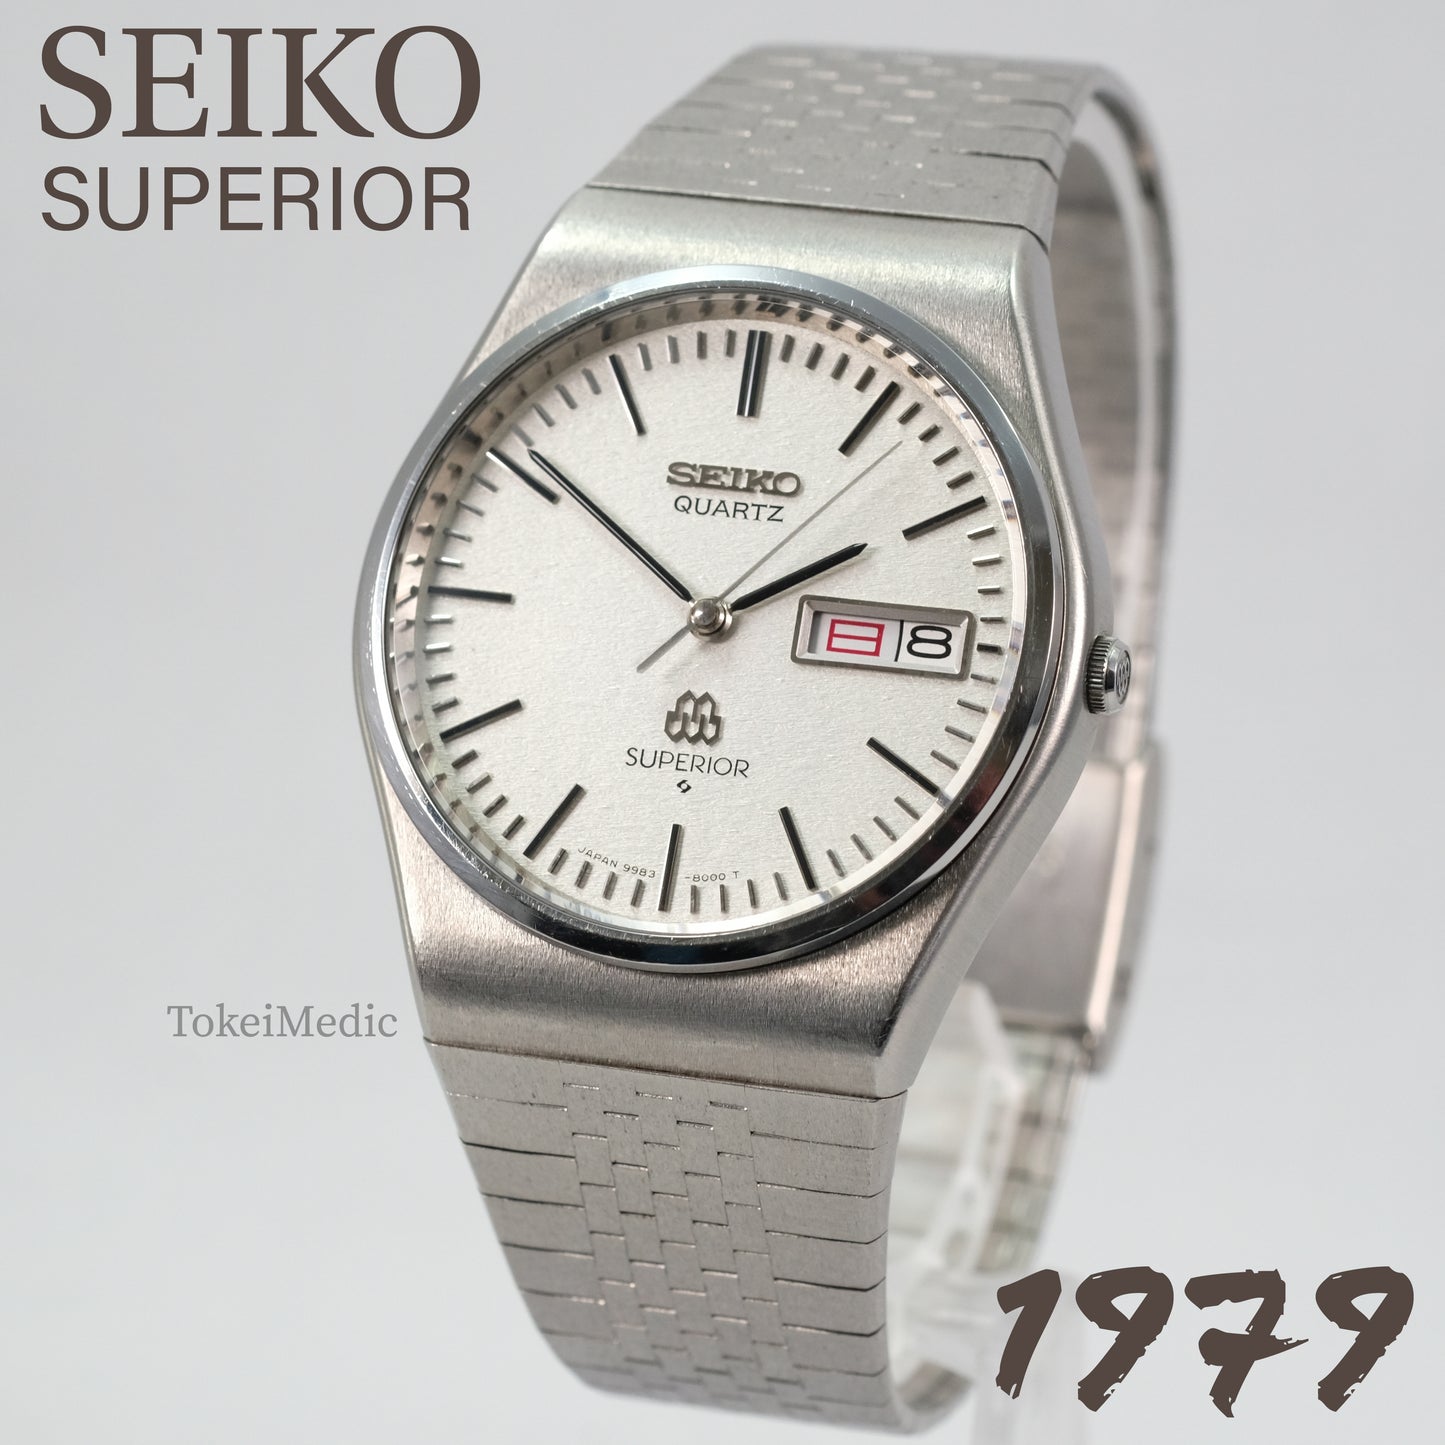 1979 Seiko Superior 9983-8000